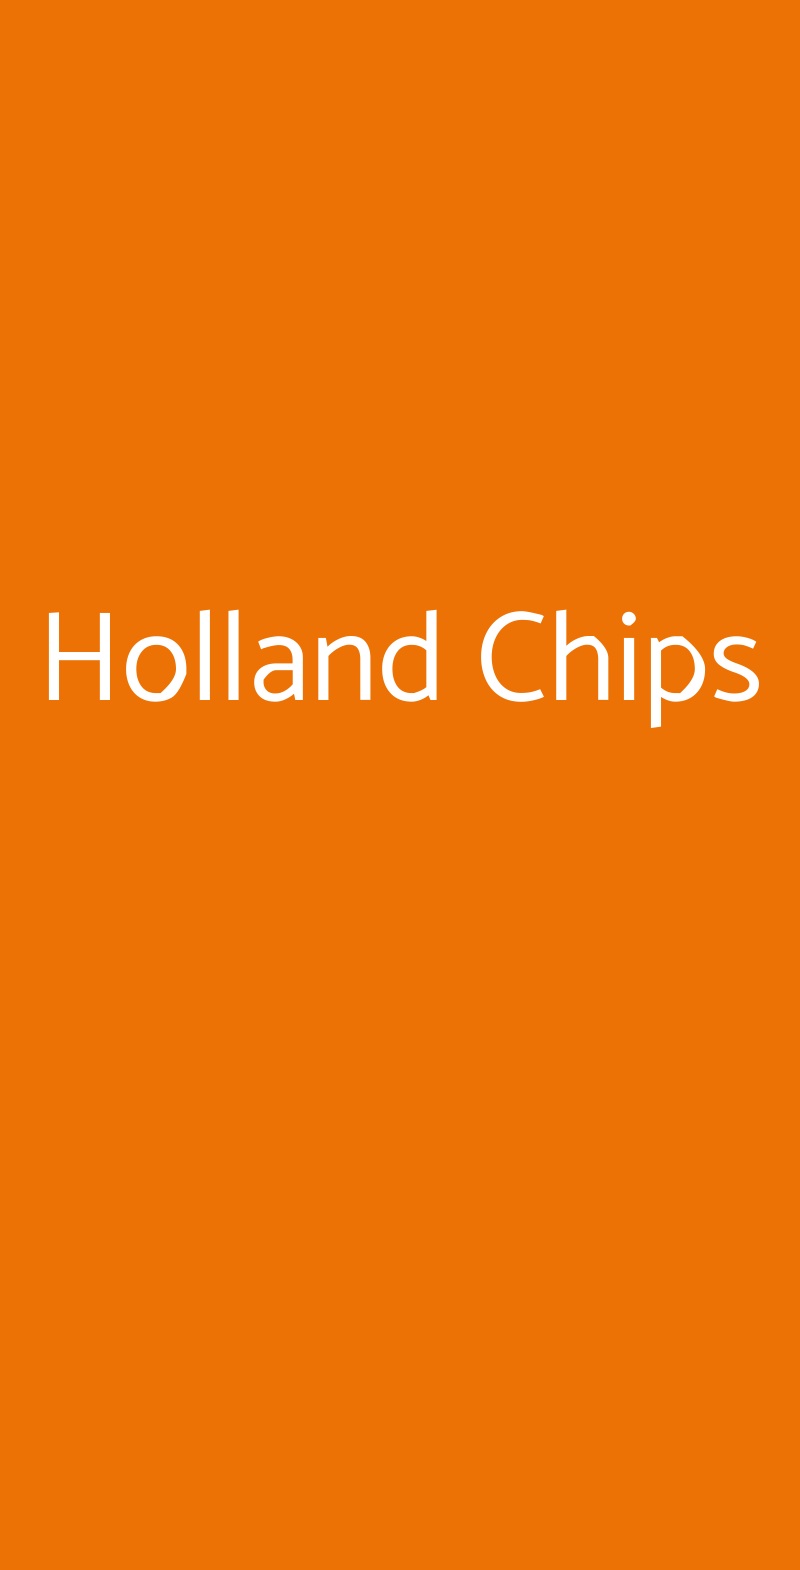 Holland Chips Forlì menù 1 pagina